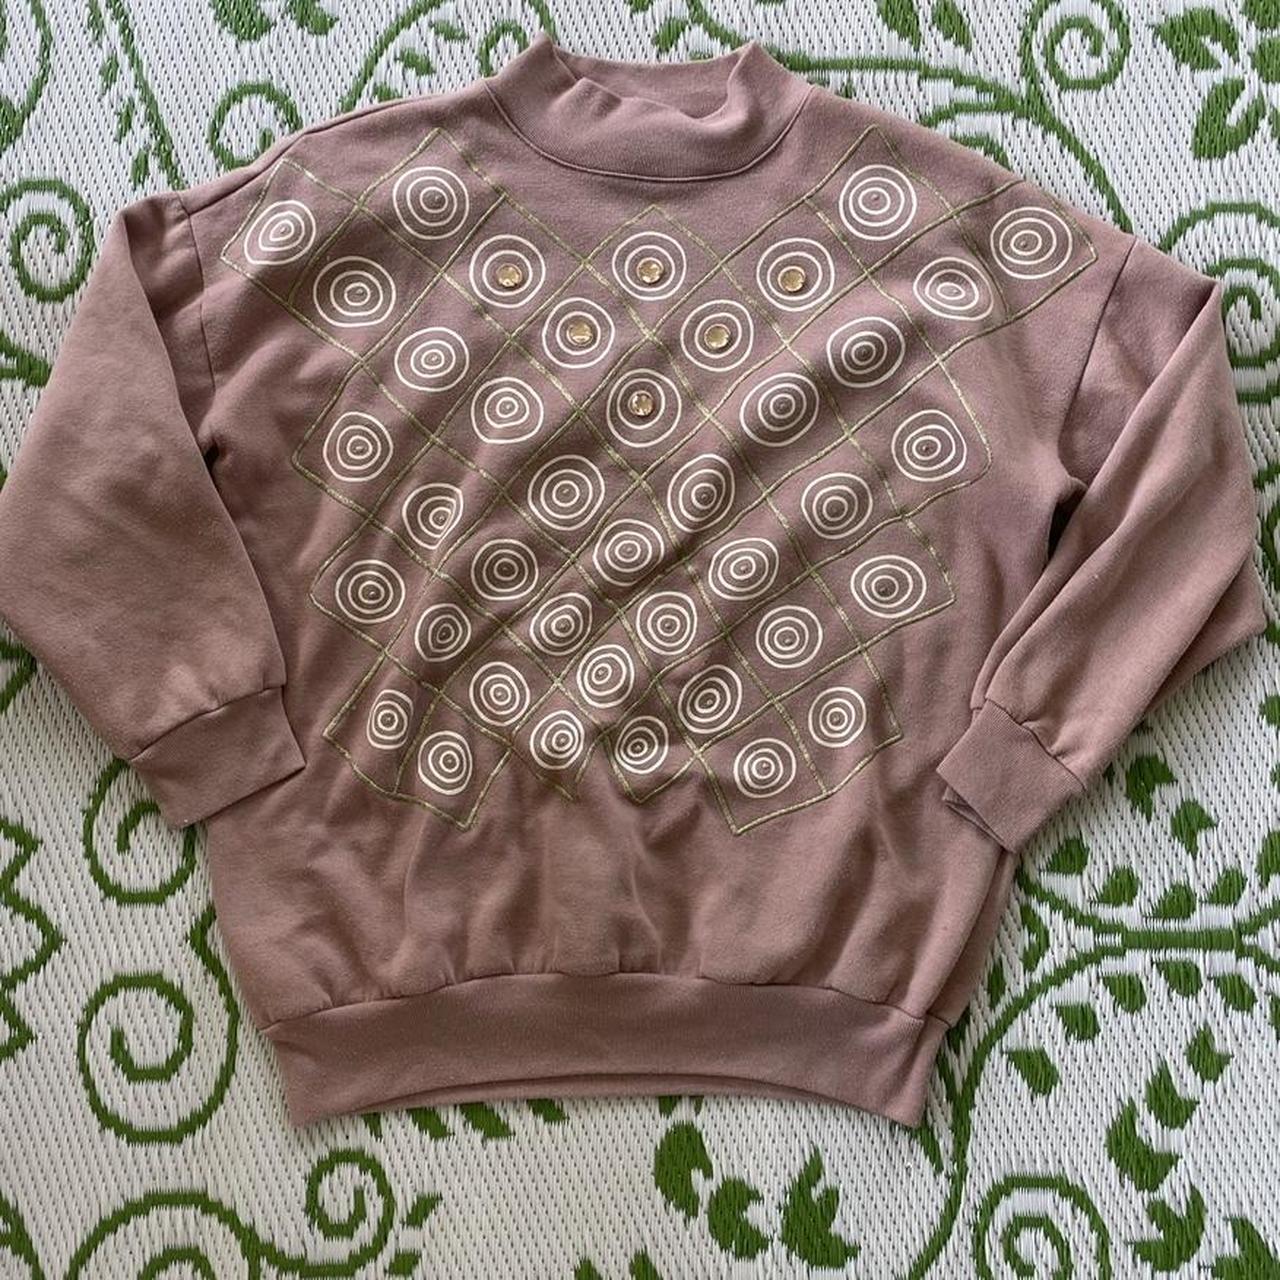 Product Image 2 - VINTAGE TURTLENECK SWEATSHIRT💞 This sweatshirt